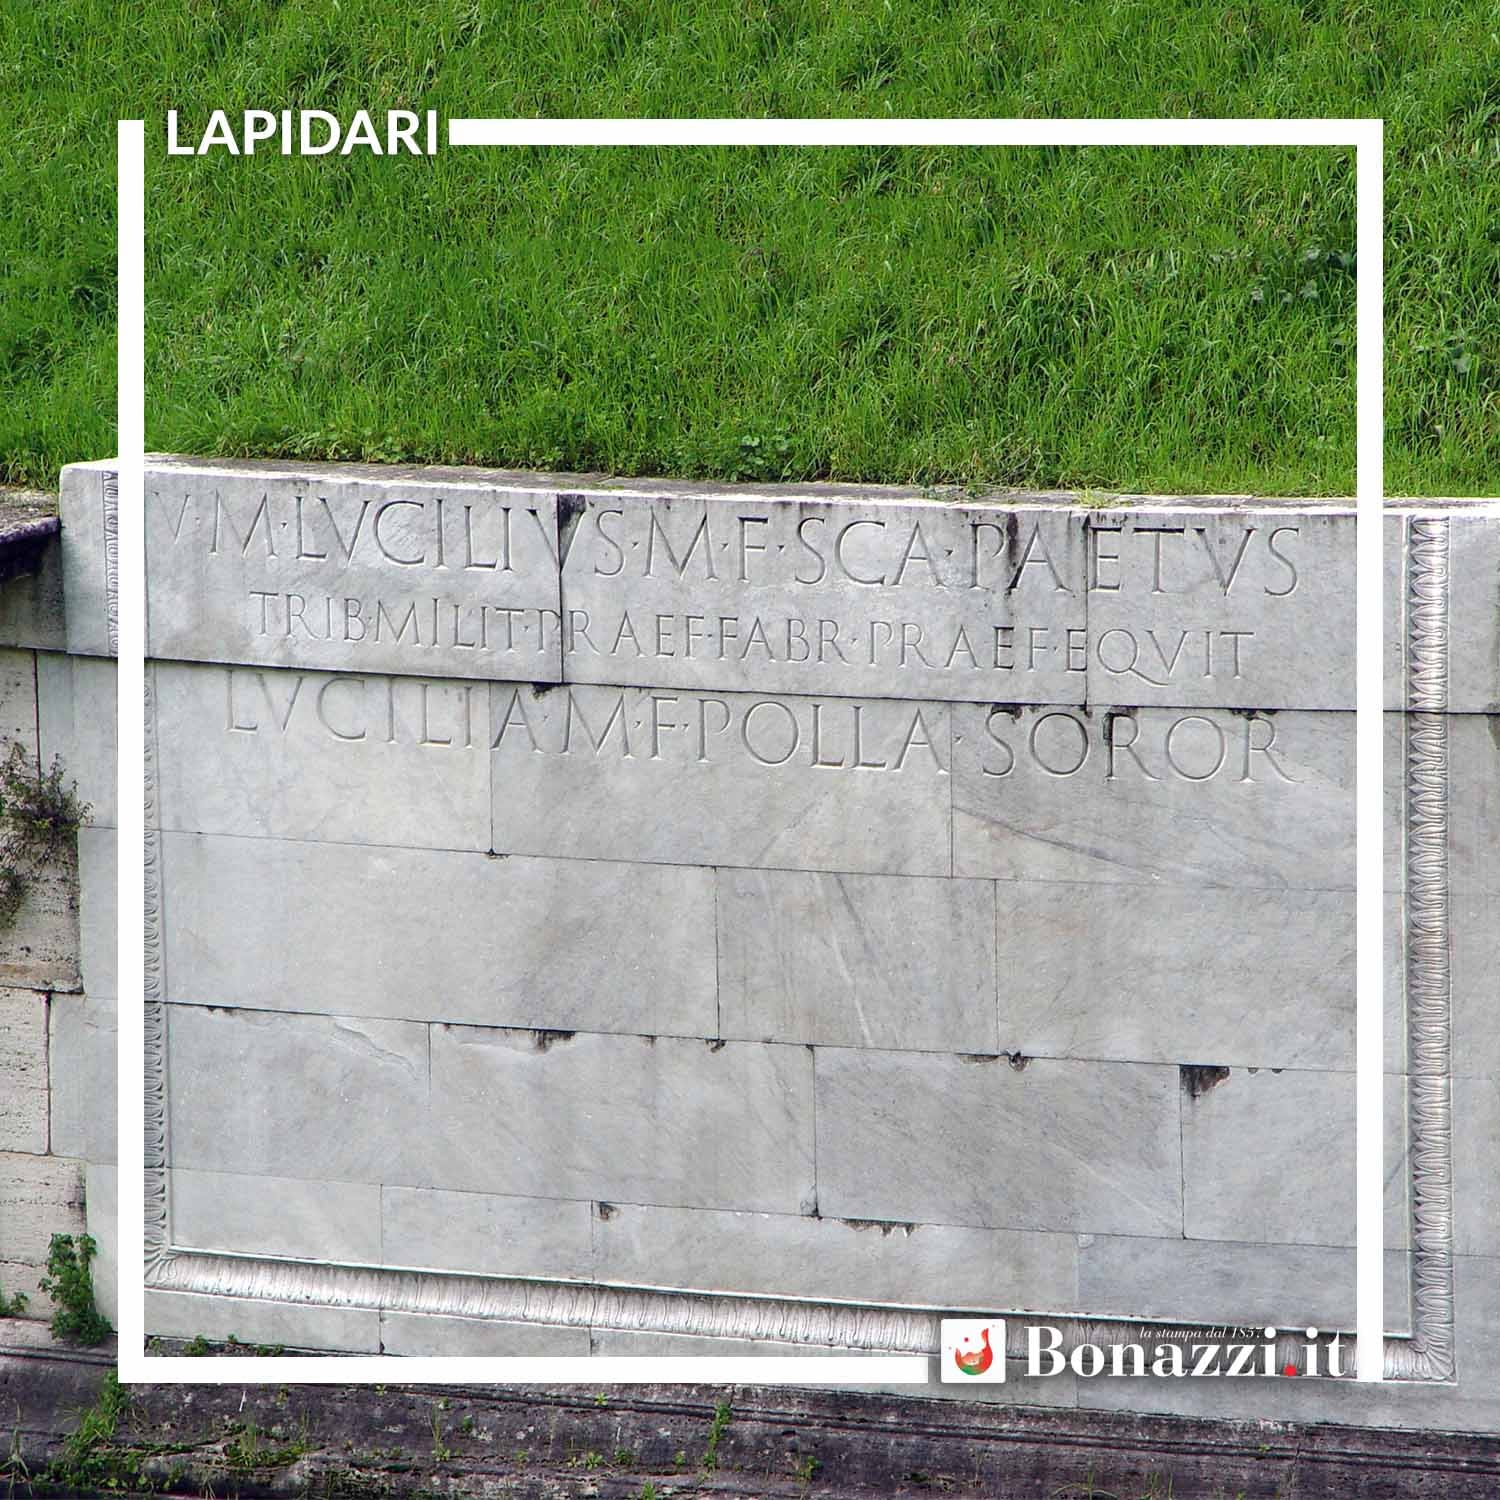 GLOSSARIO_Lapidari